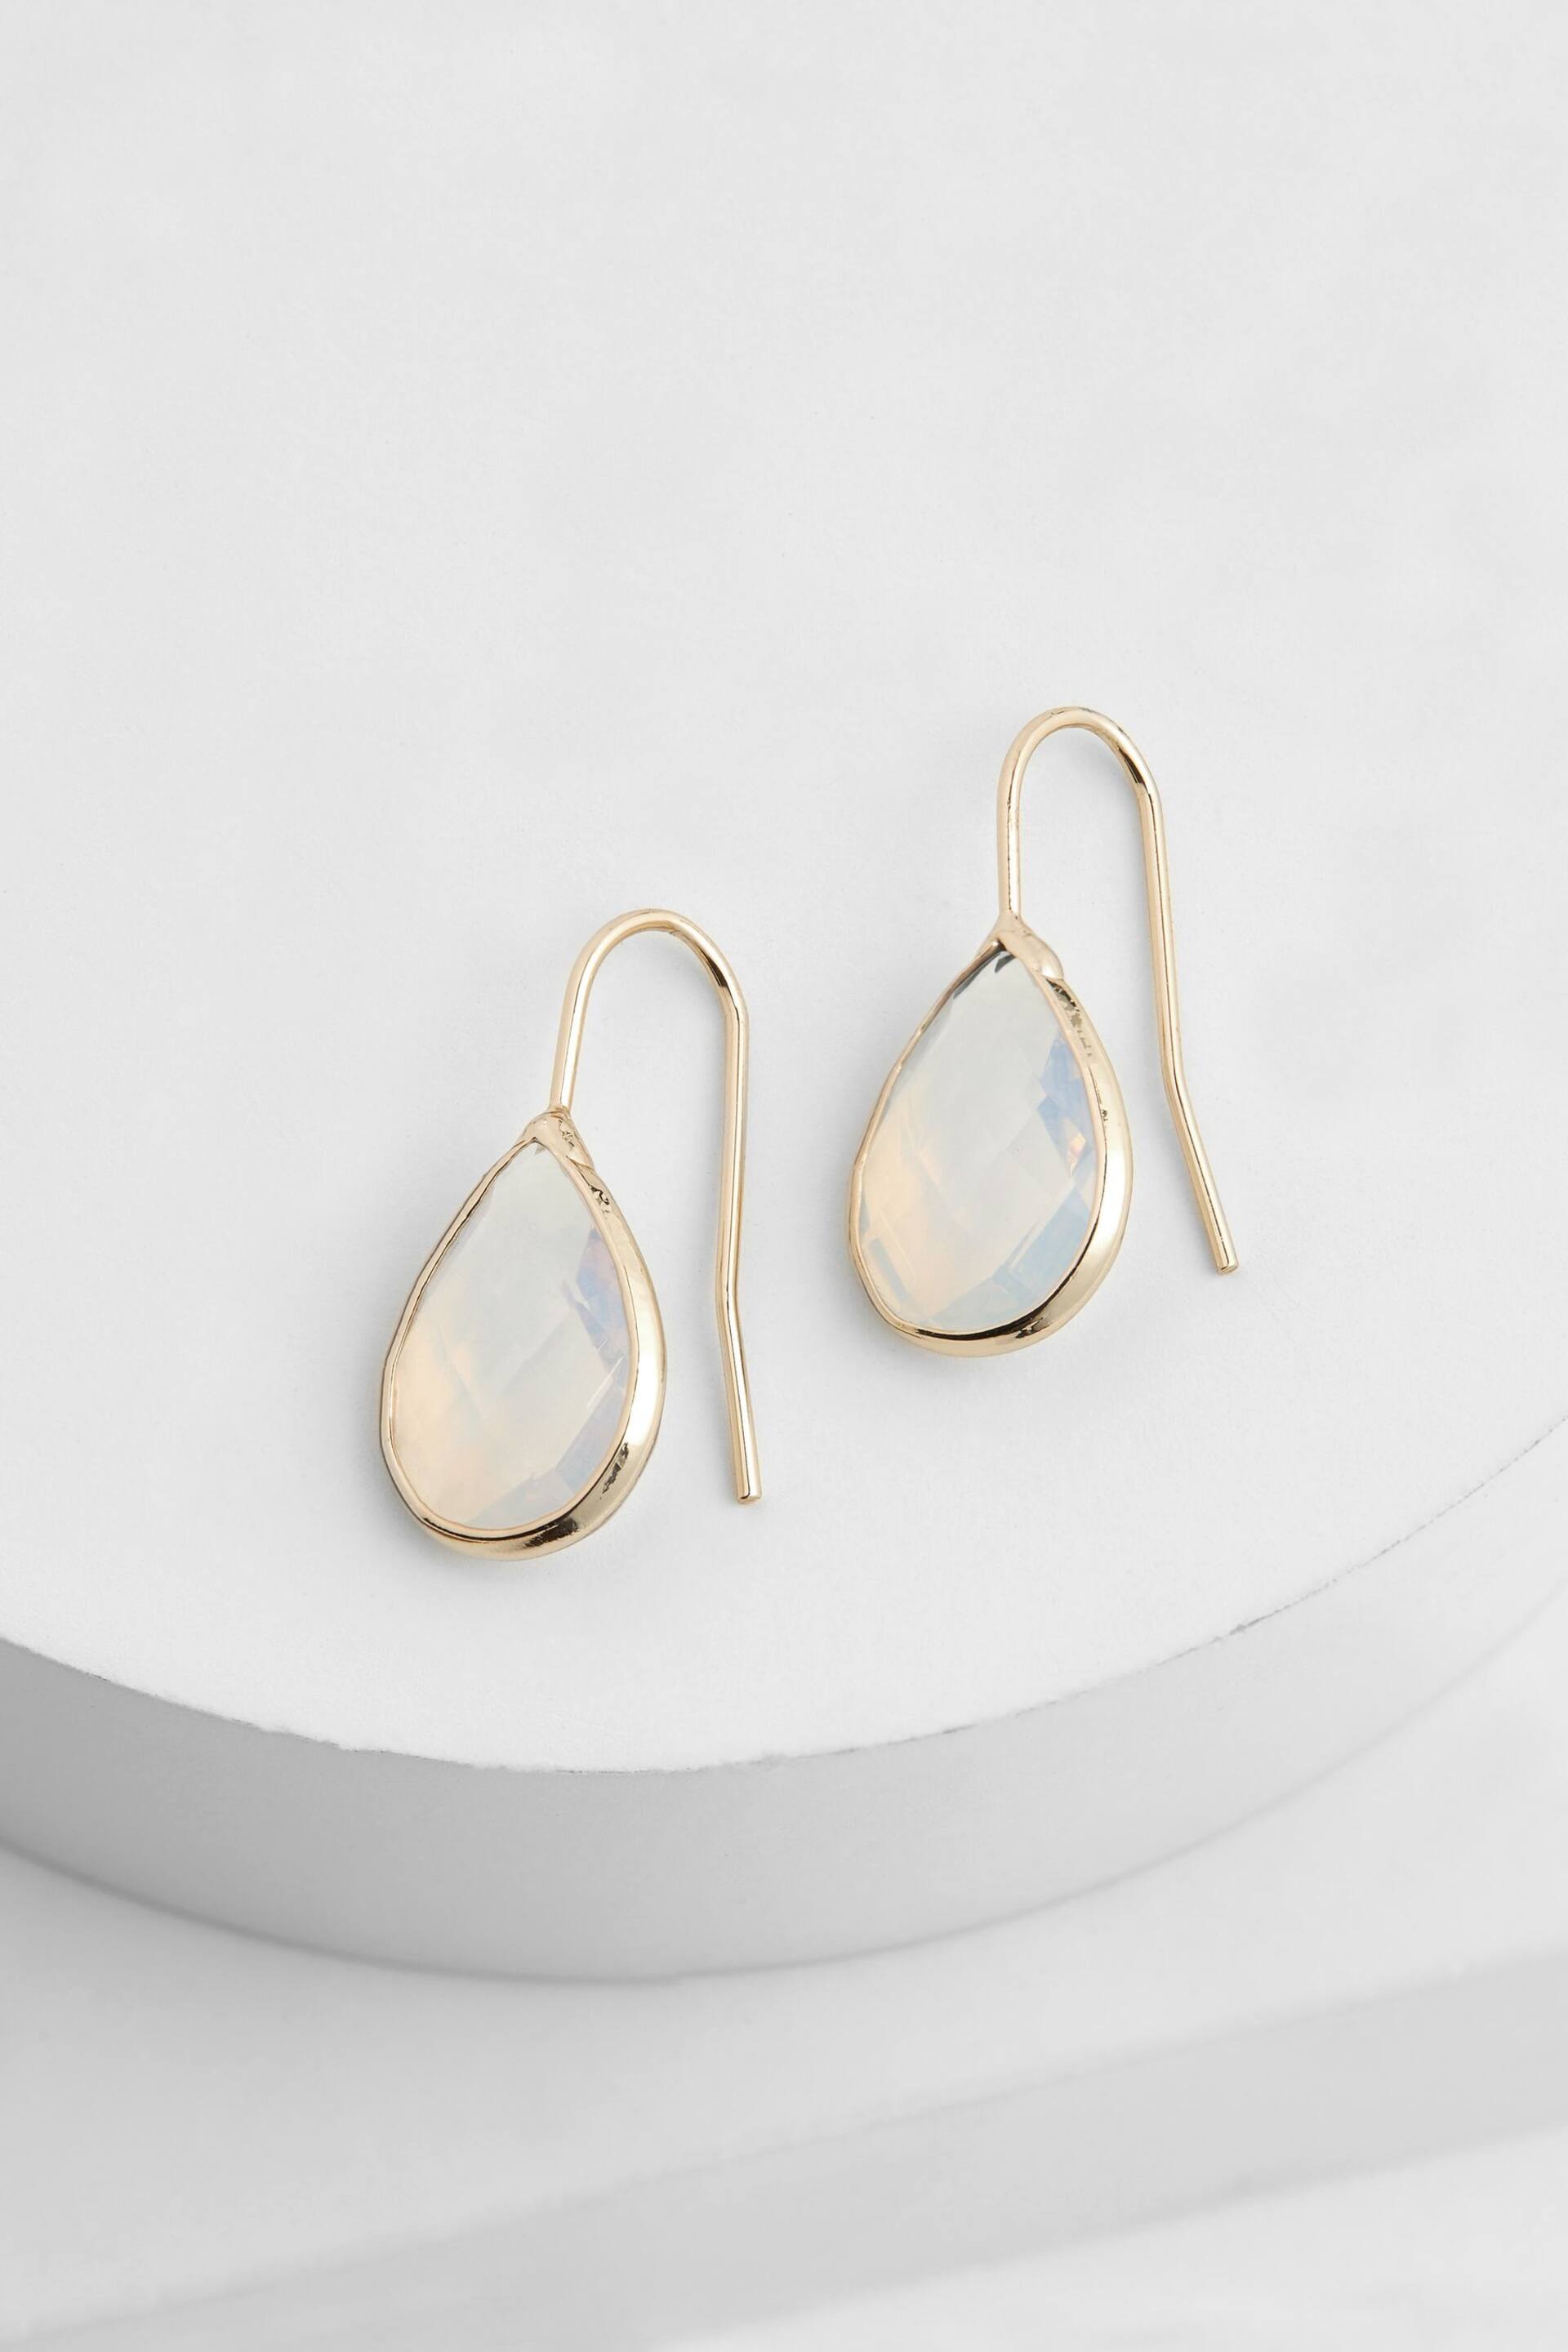 Gold Tone Teardrop Opal Earrings - Image 1 of 1